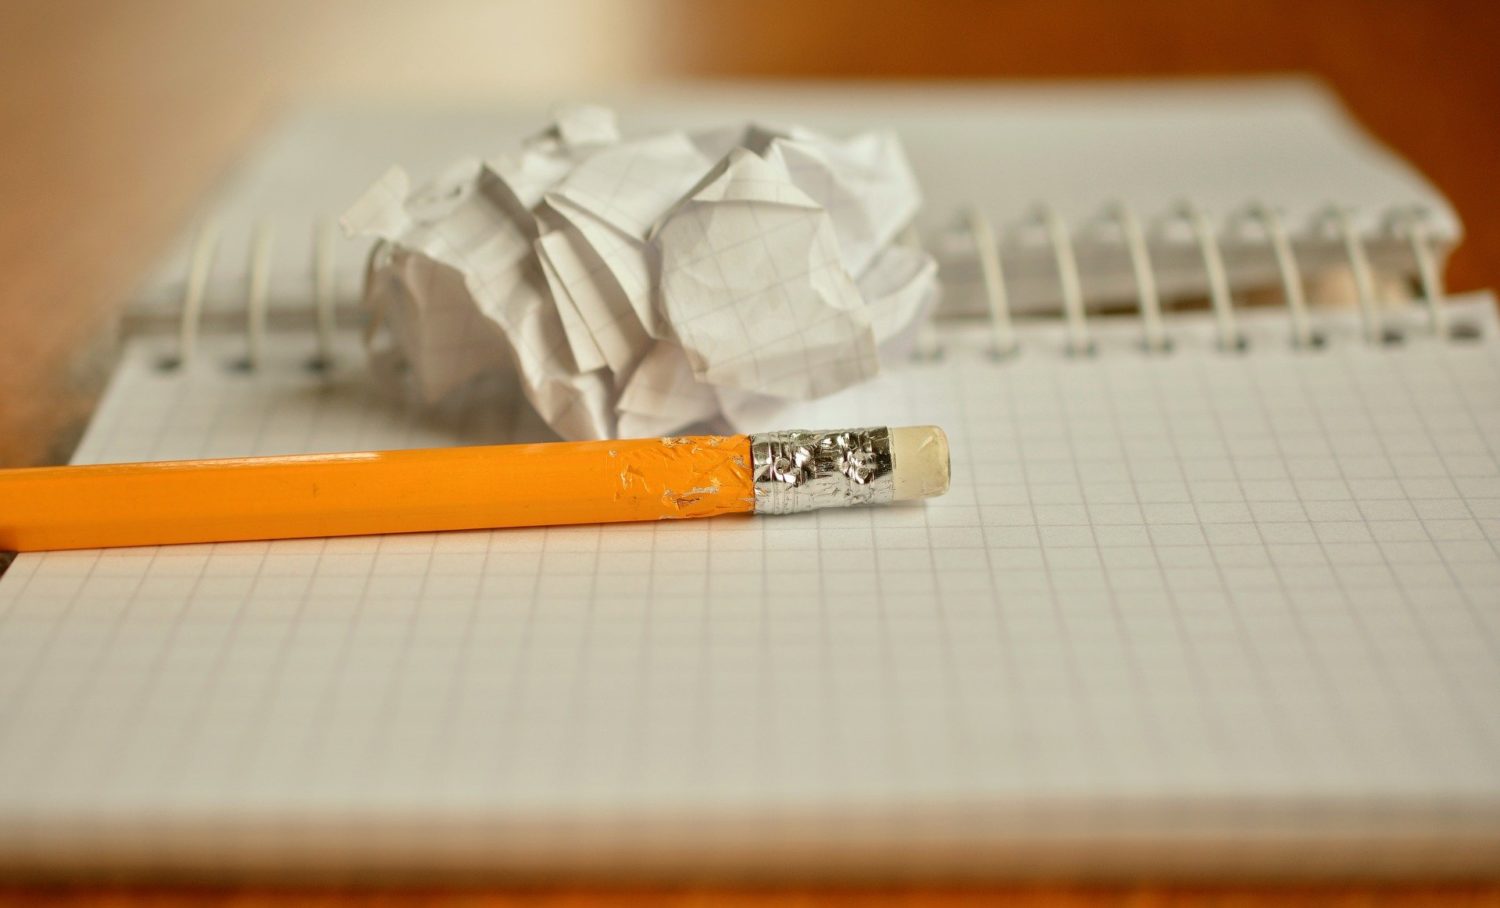 Papier und Stift, mehr braucht man für das Corona-Update des Spieleklassikers "Galgenmännchen" nicht. Foto: Pixabay